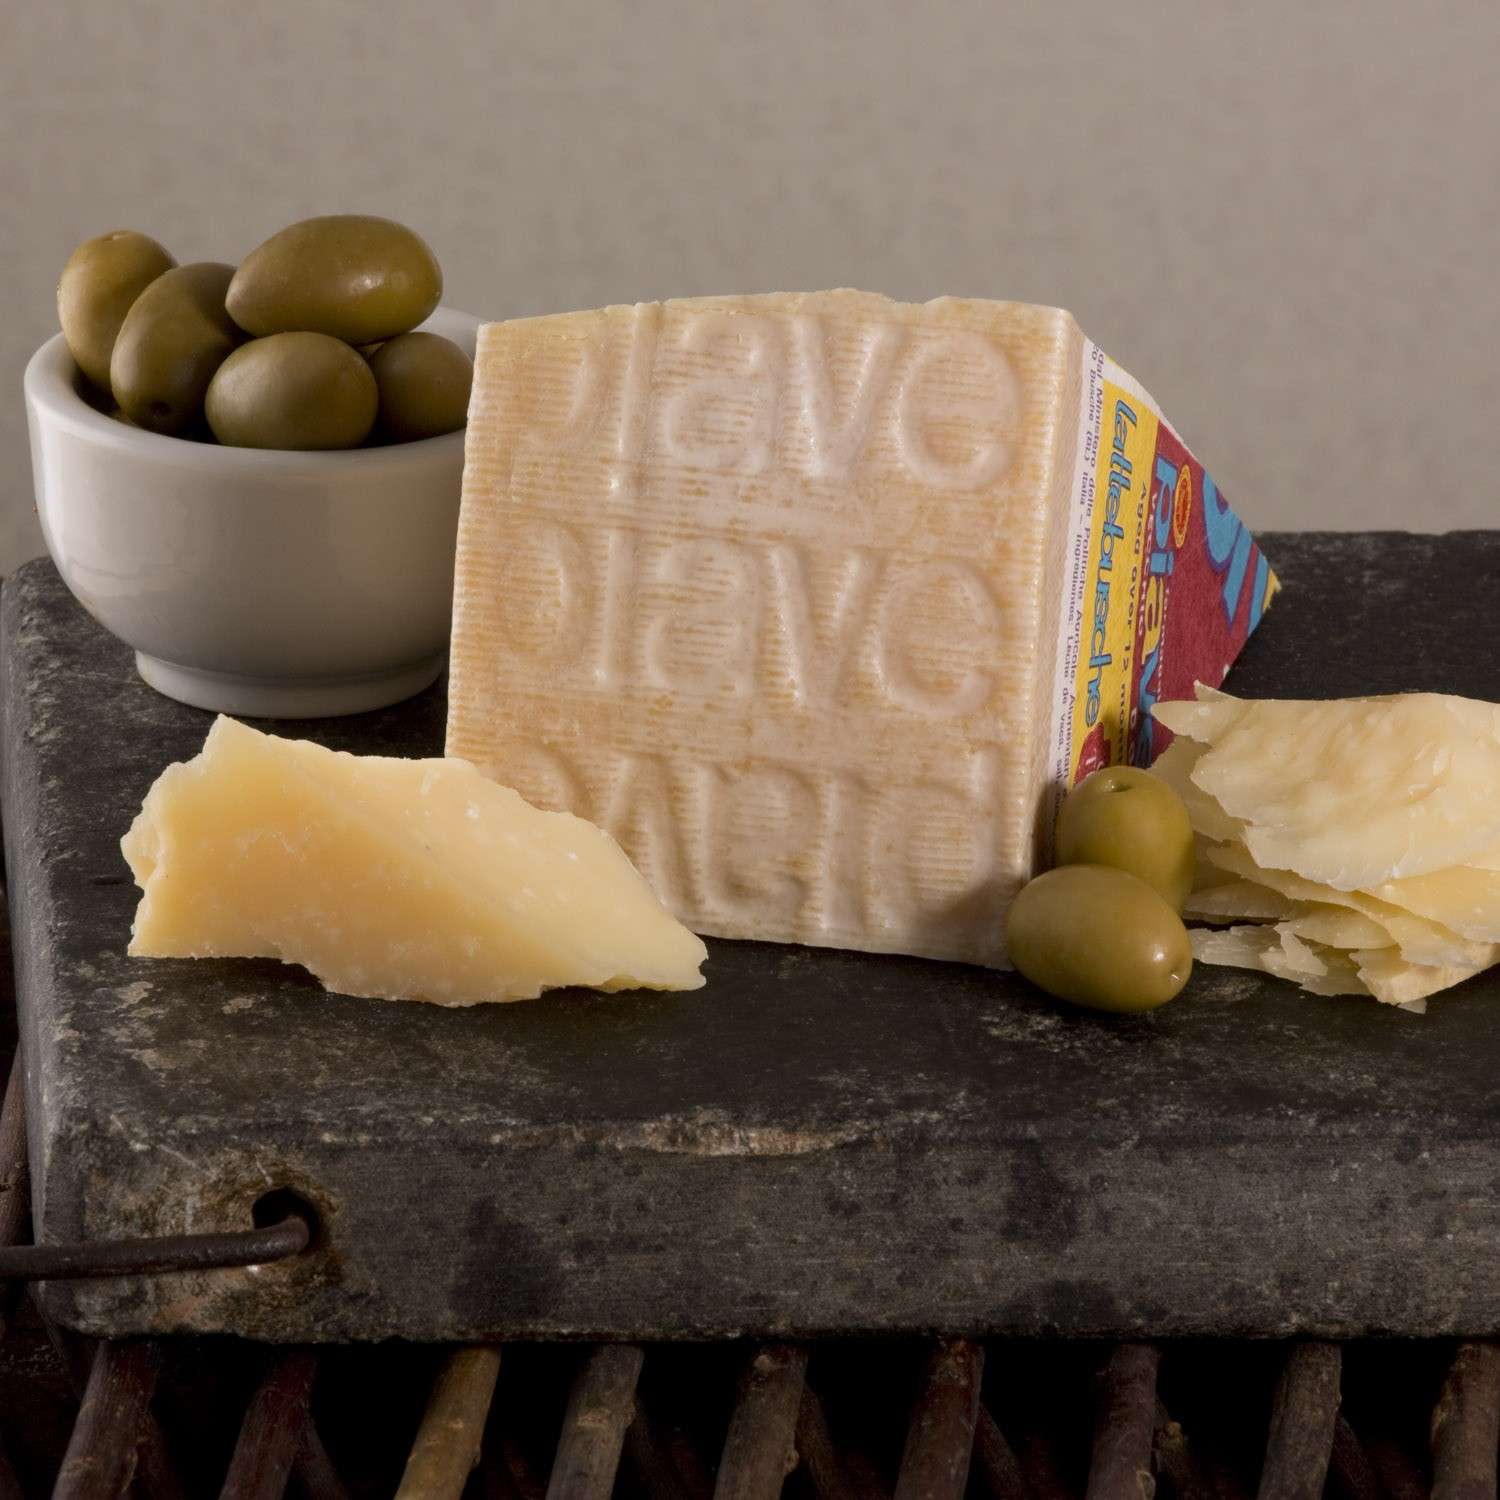 Hechos con Amore: 5 quesos Italianos deliciosos para agregar en tus platillos 1